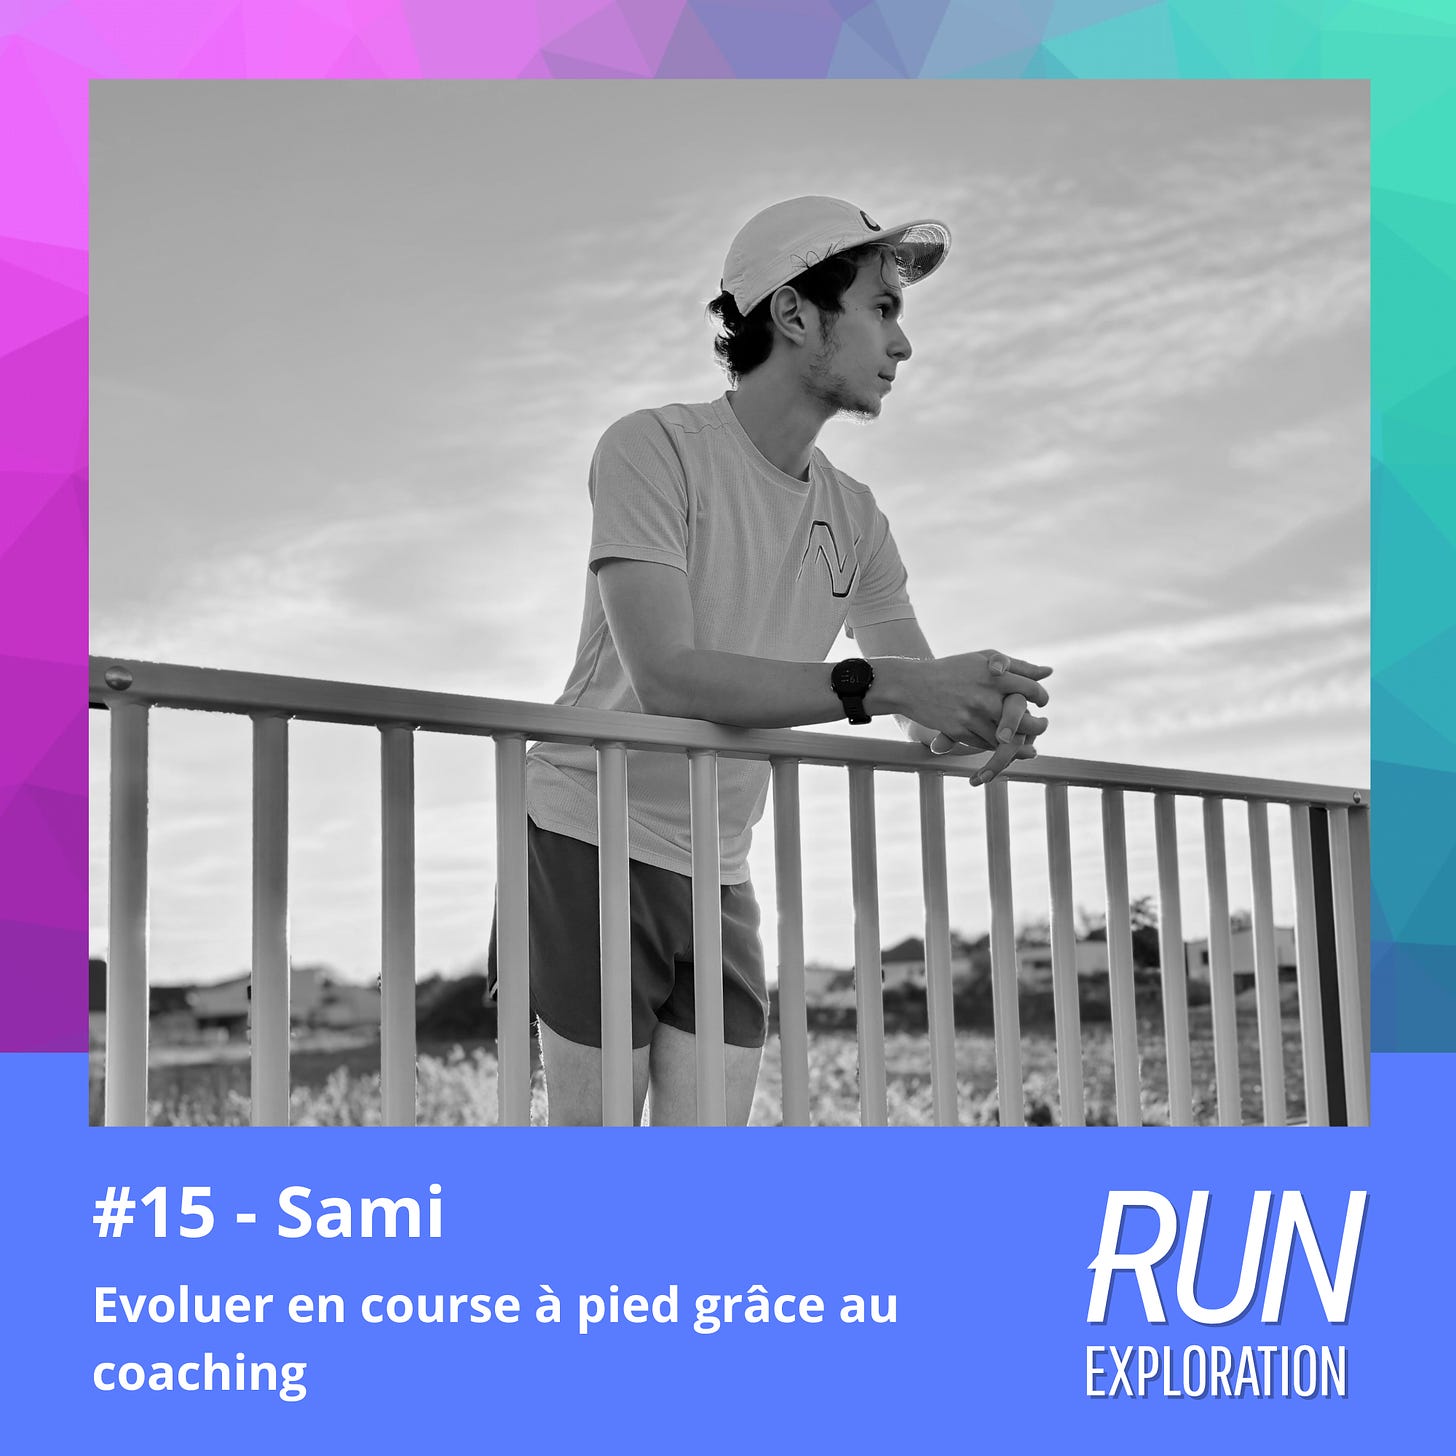 Run Exploration #15 - Sami - Evoluer en course à pied grâce au coaching